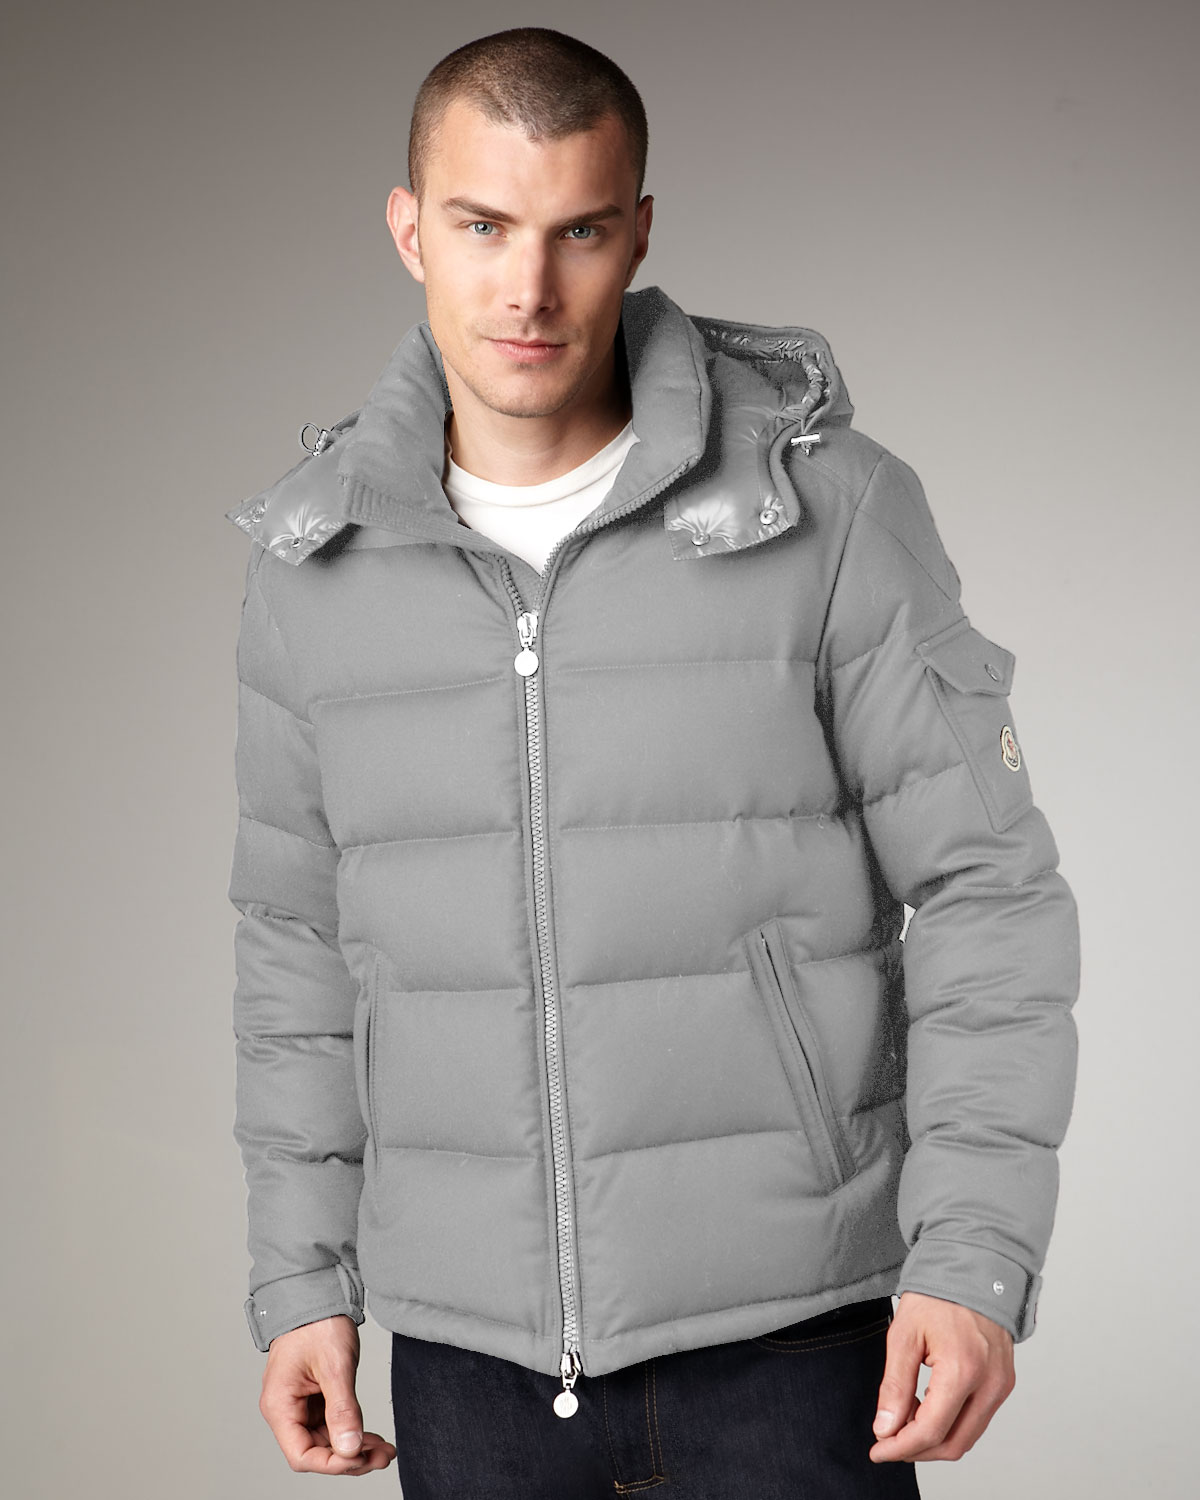 grey moncler jacket mens, OFF 78%,Cheap 